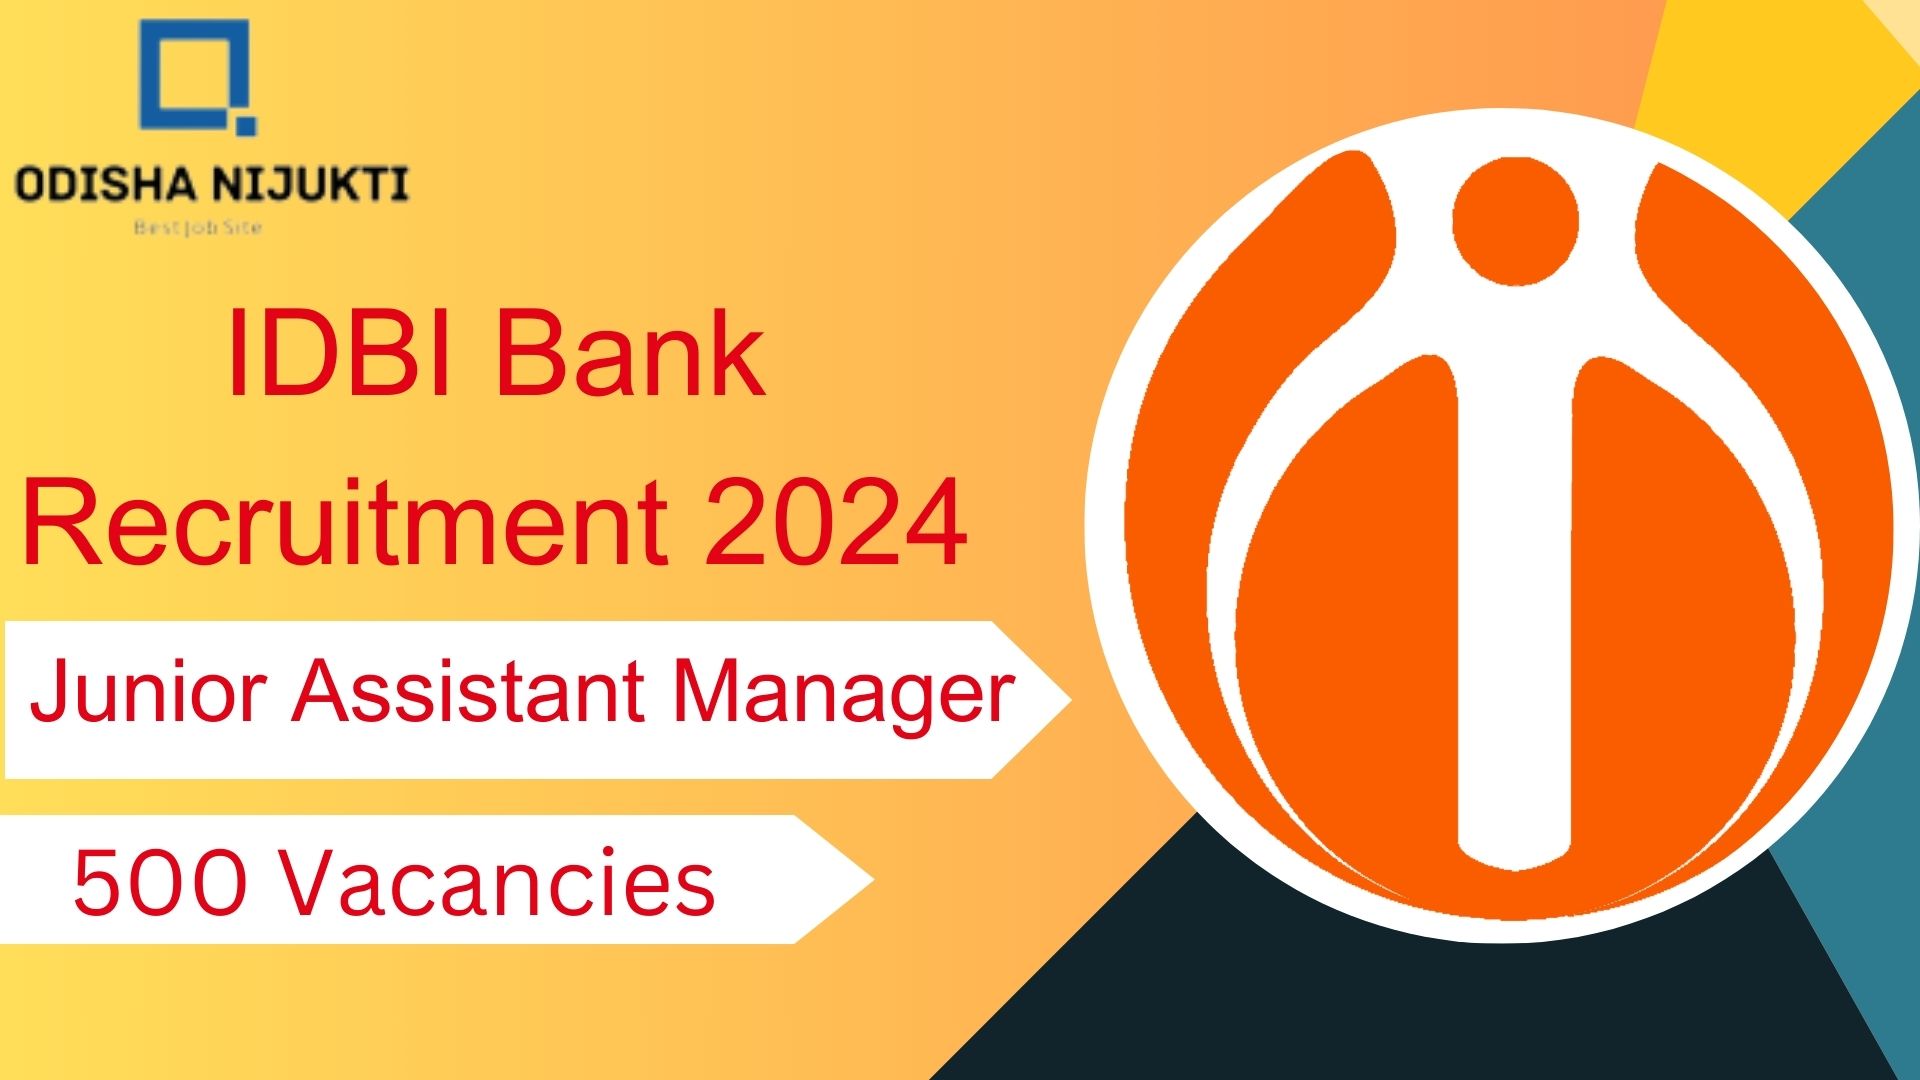 IDBI-Bank-Recruitment-2024-500-Vacancies-for-Junior-Assistant-Manager-